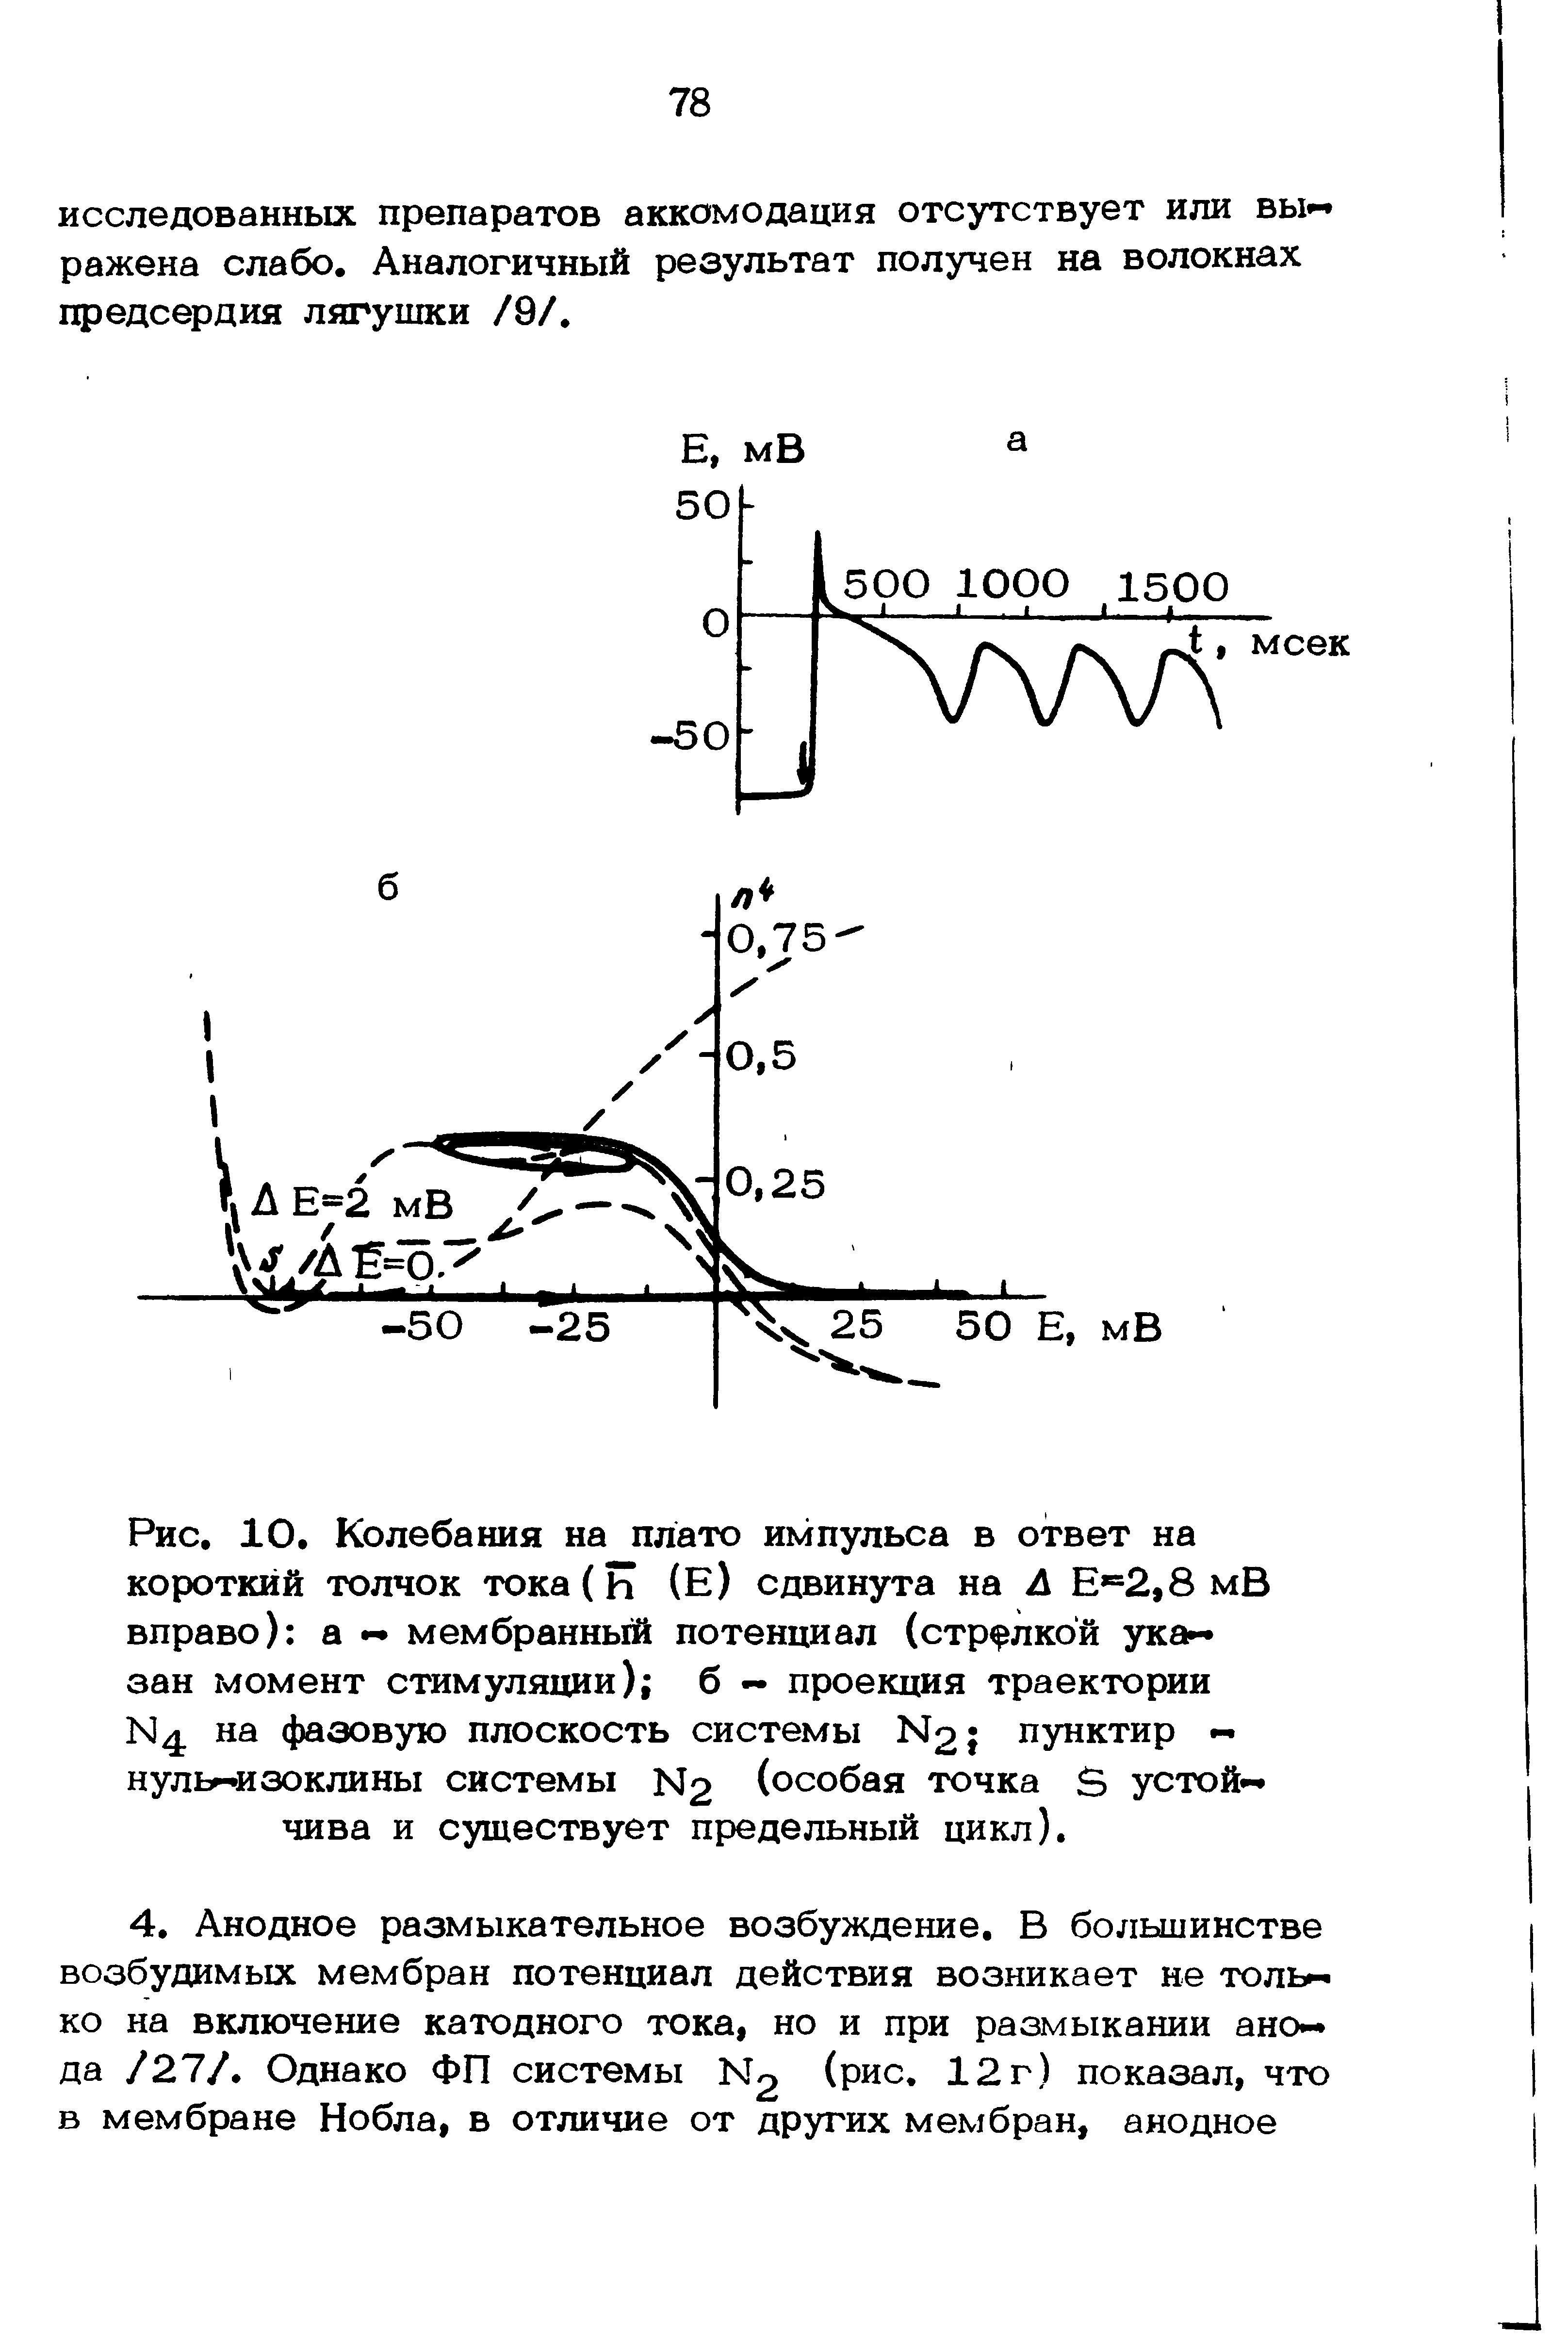 Рис. 10. Колебания на плато импульса в ответ на короткий толчок тока(Ь (Е) сдвинута на Л Е =2,8 мВ вправо) а мембранный потенциал (стрелкой ука зан момент стимуляции) б — проекция траектории N4 на фазовую плоскость системы N2 пунктир нульнизоклины системы N2 (особая точка 5 устой чива и существует предельный цикл).